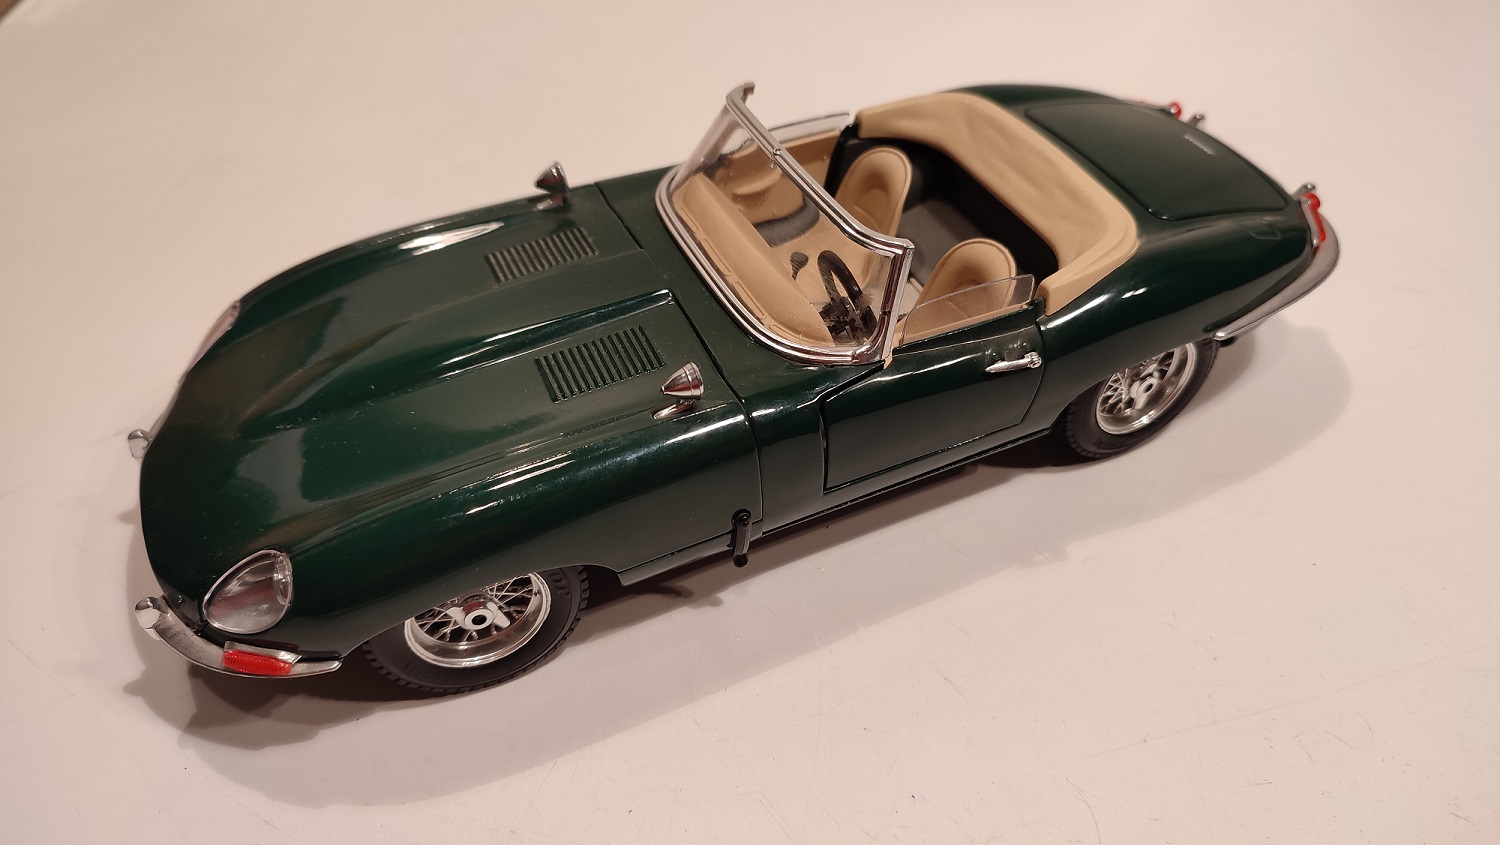 Pièce détachée miniature Burago Jaguar type E 1961 1/18 1/18e 1/18ème